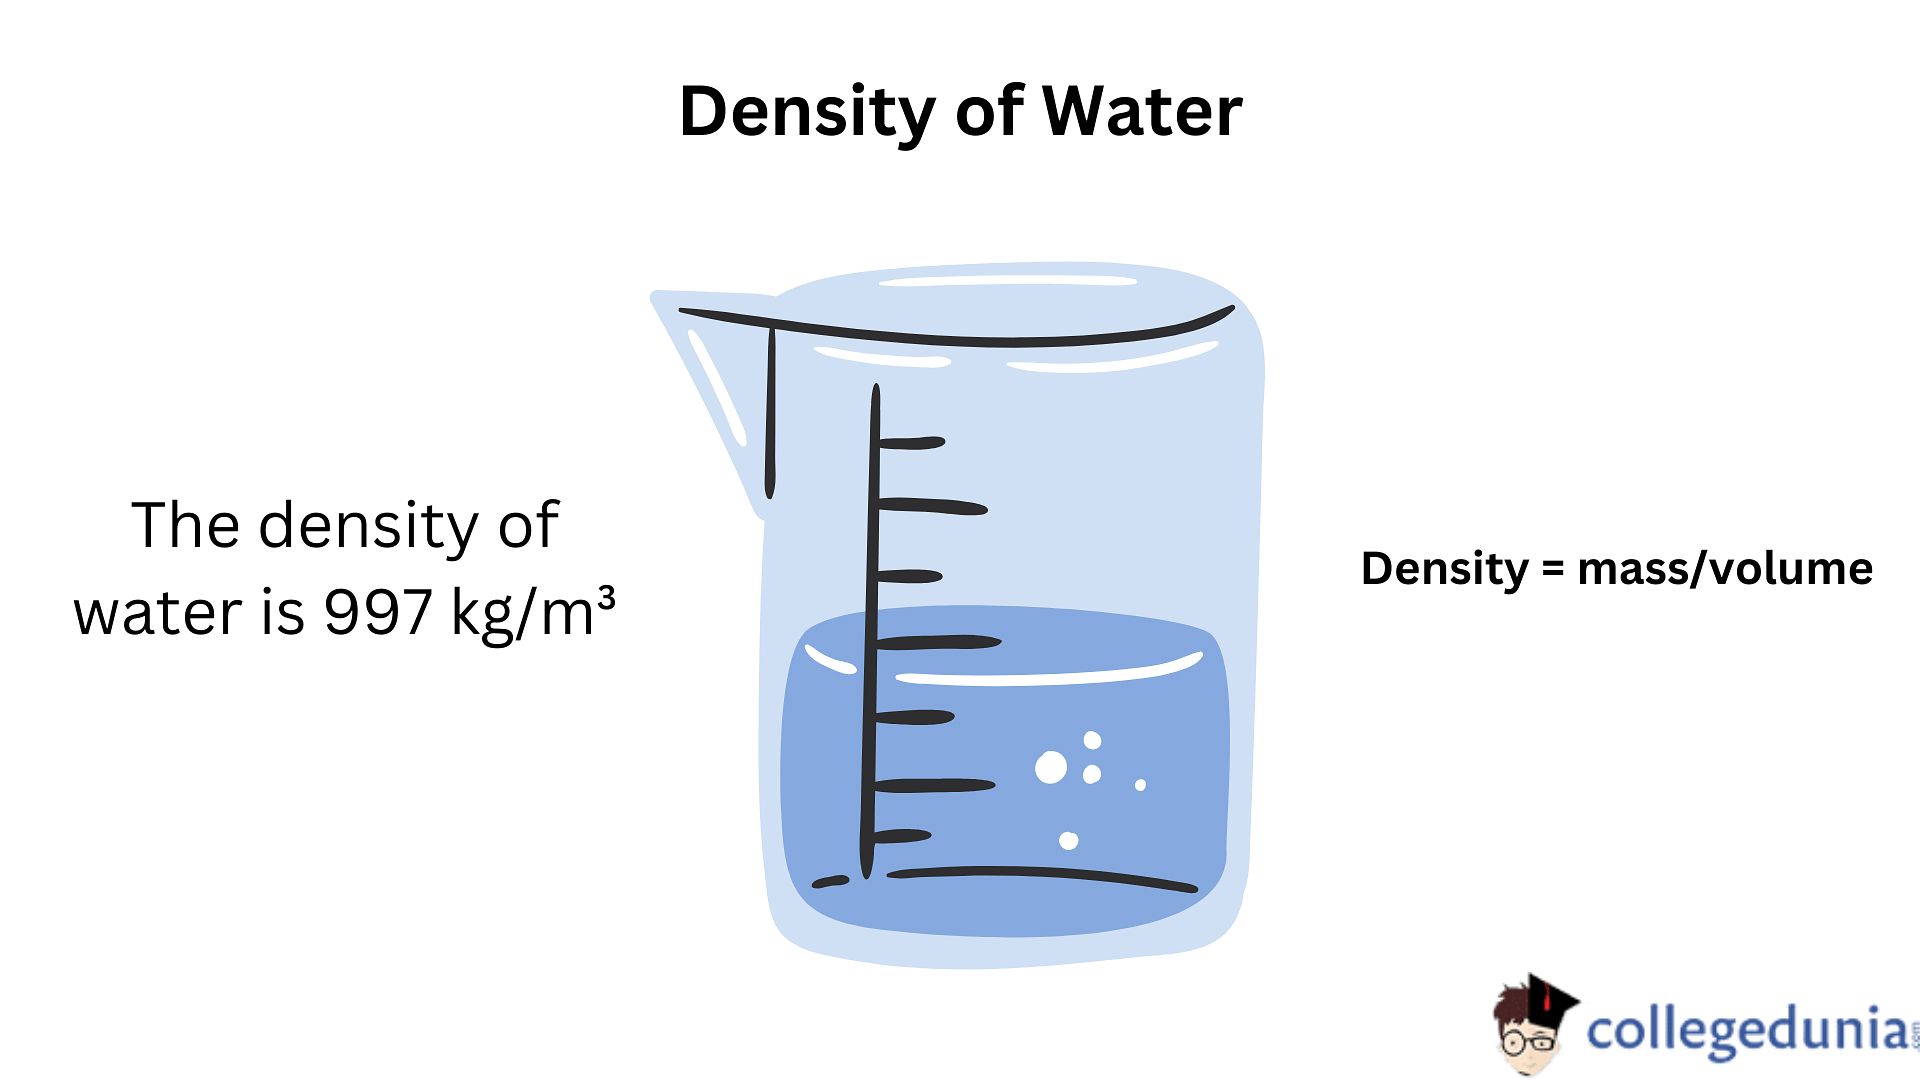 density of fresh water